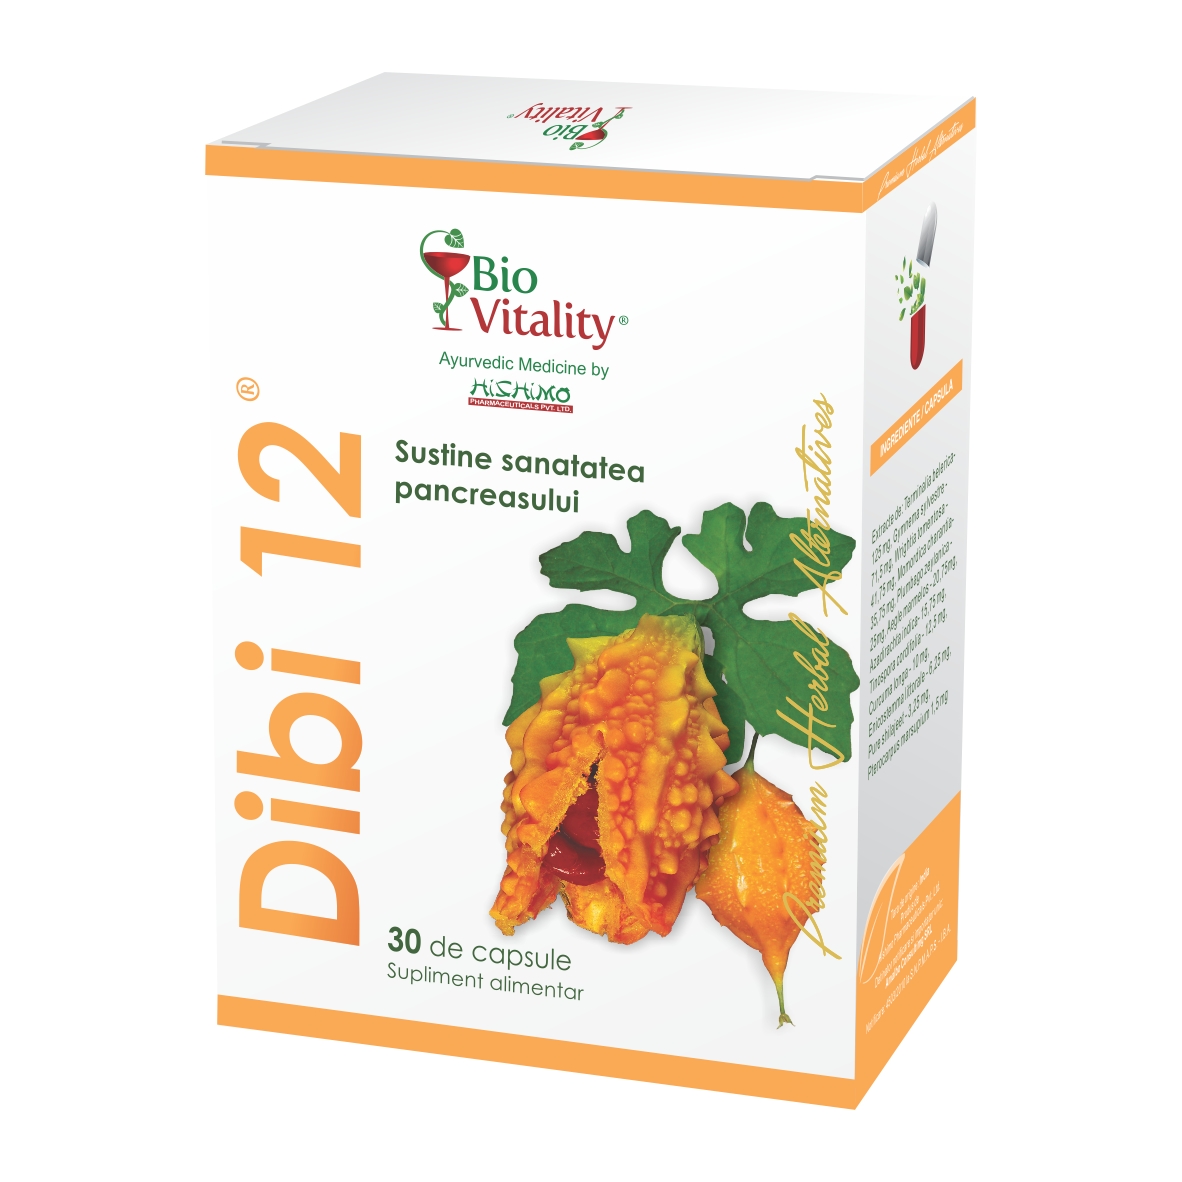 DIBI-12 X 30 CAPSULE Bio Vitality